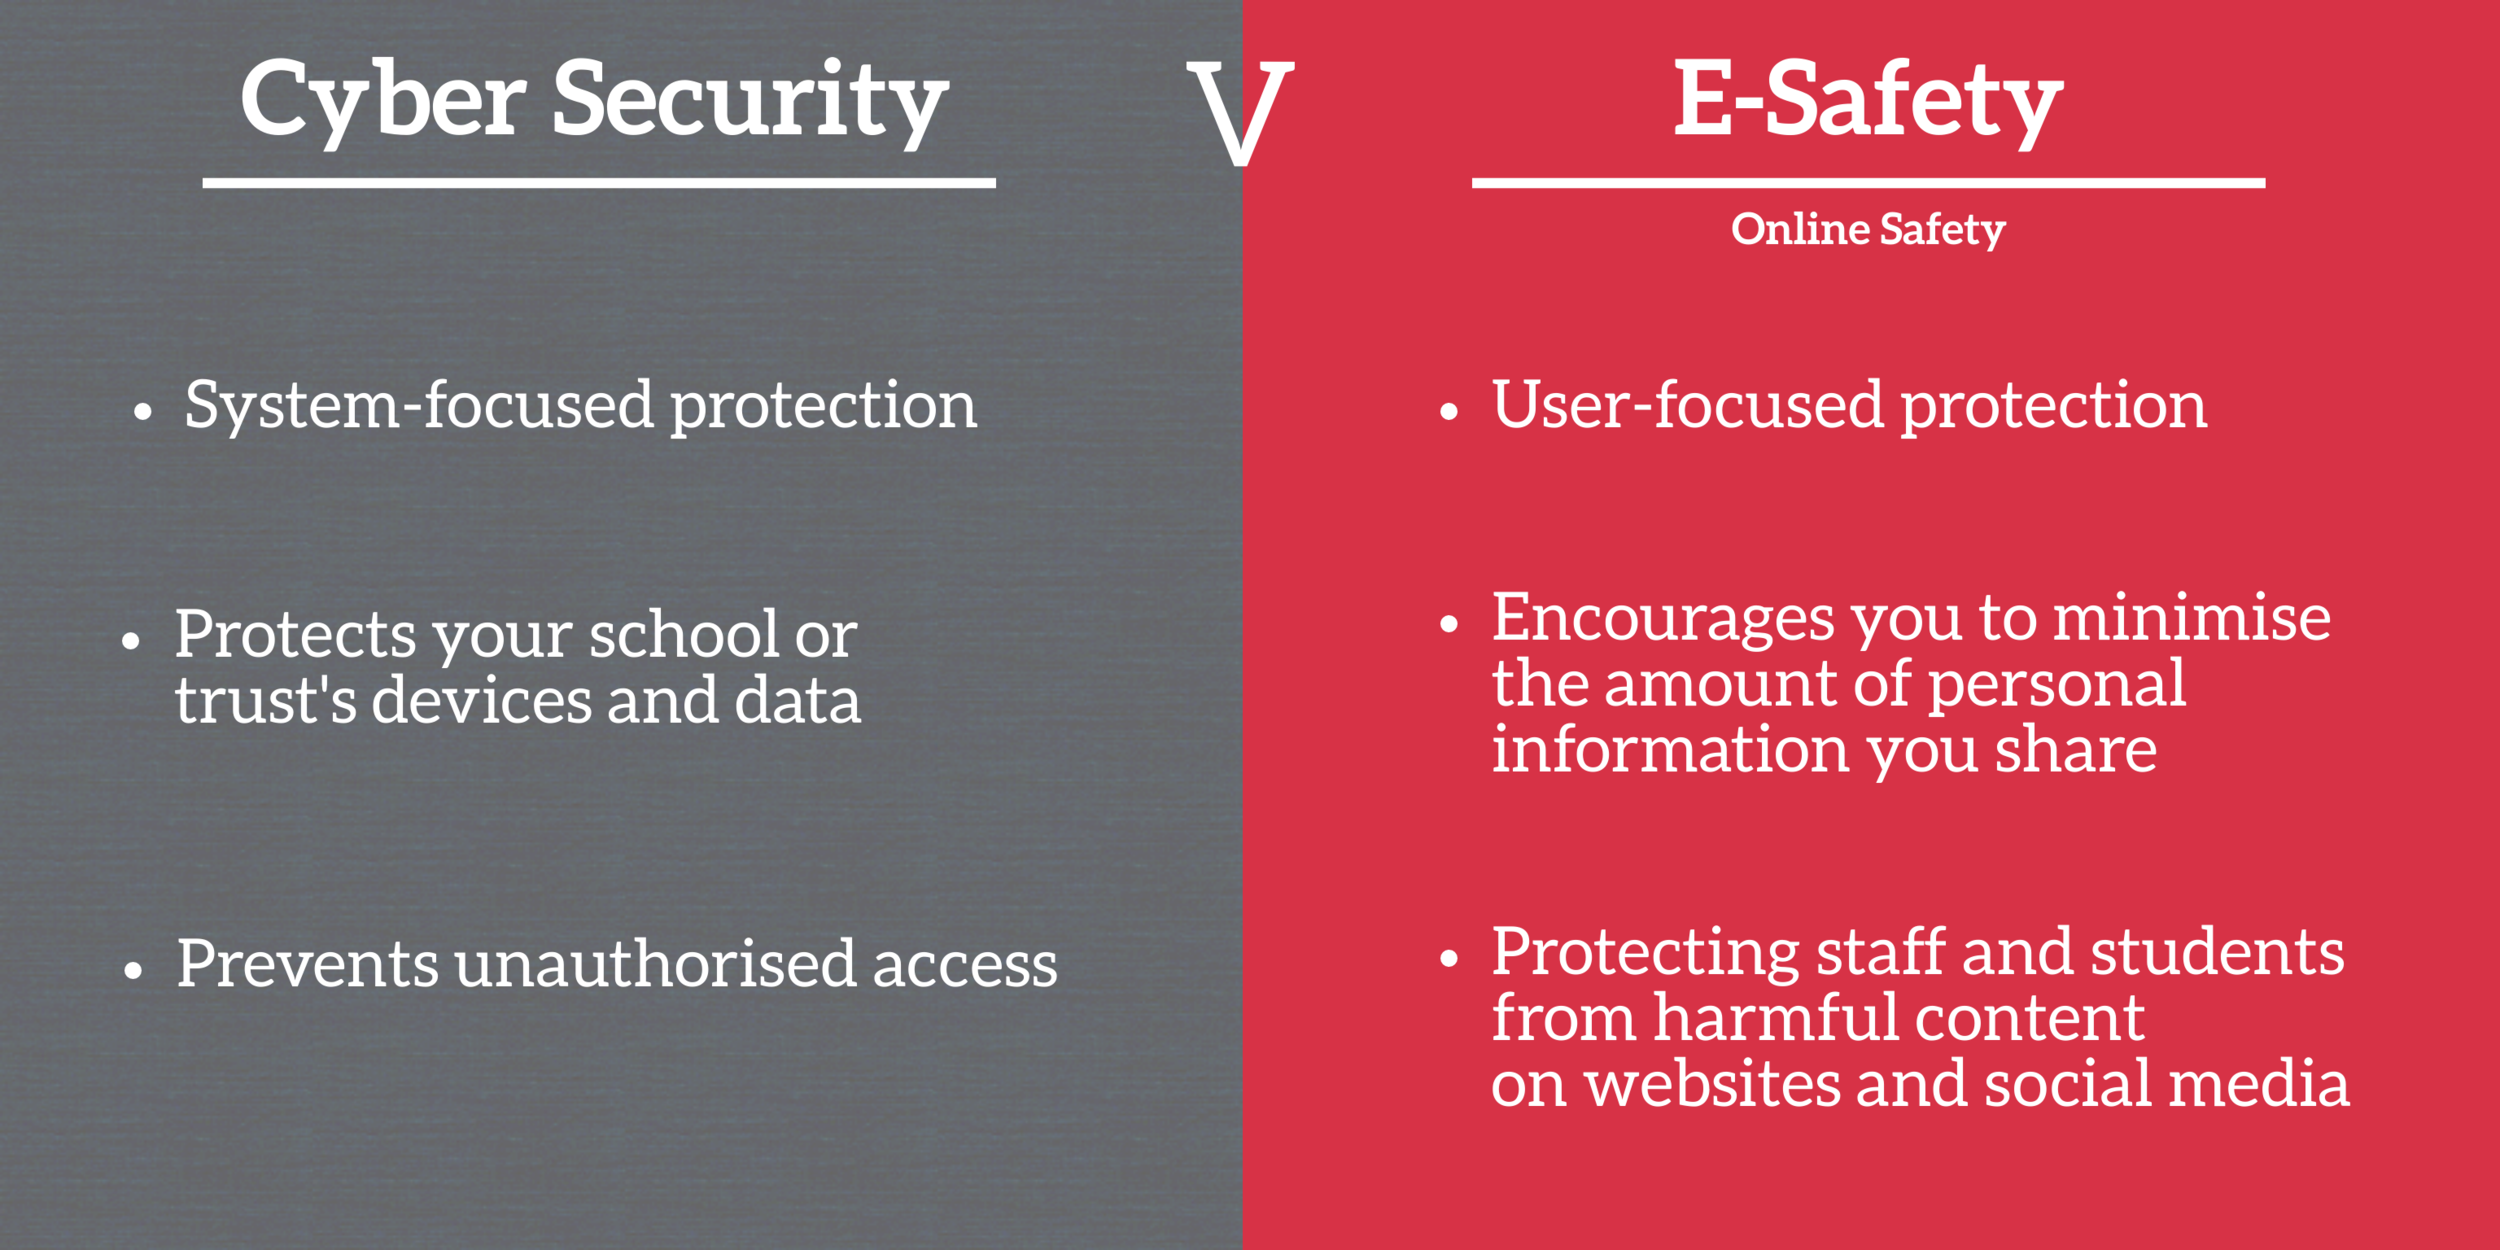 Hva er forskjellen mellom cybersikkerhet og cybersikkerhet?